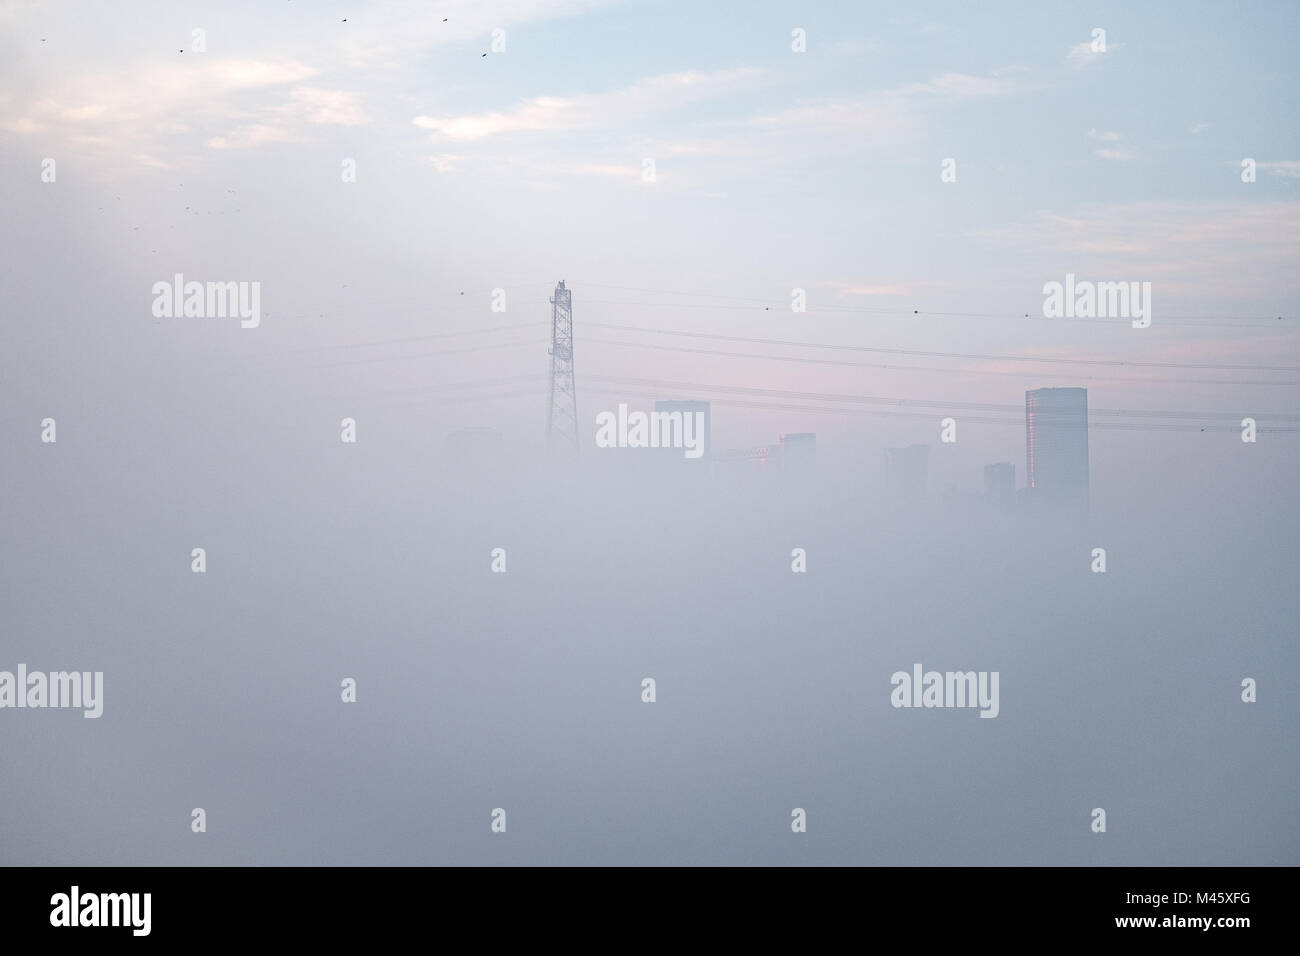 Abu Dhabi cubierto con la manta de niebla densa - ahogado en la niebla, edificios y torres eléctricas a través de niebla peaking Foto de stock